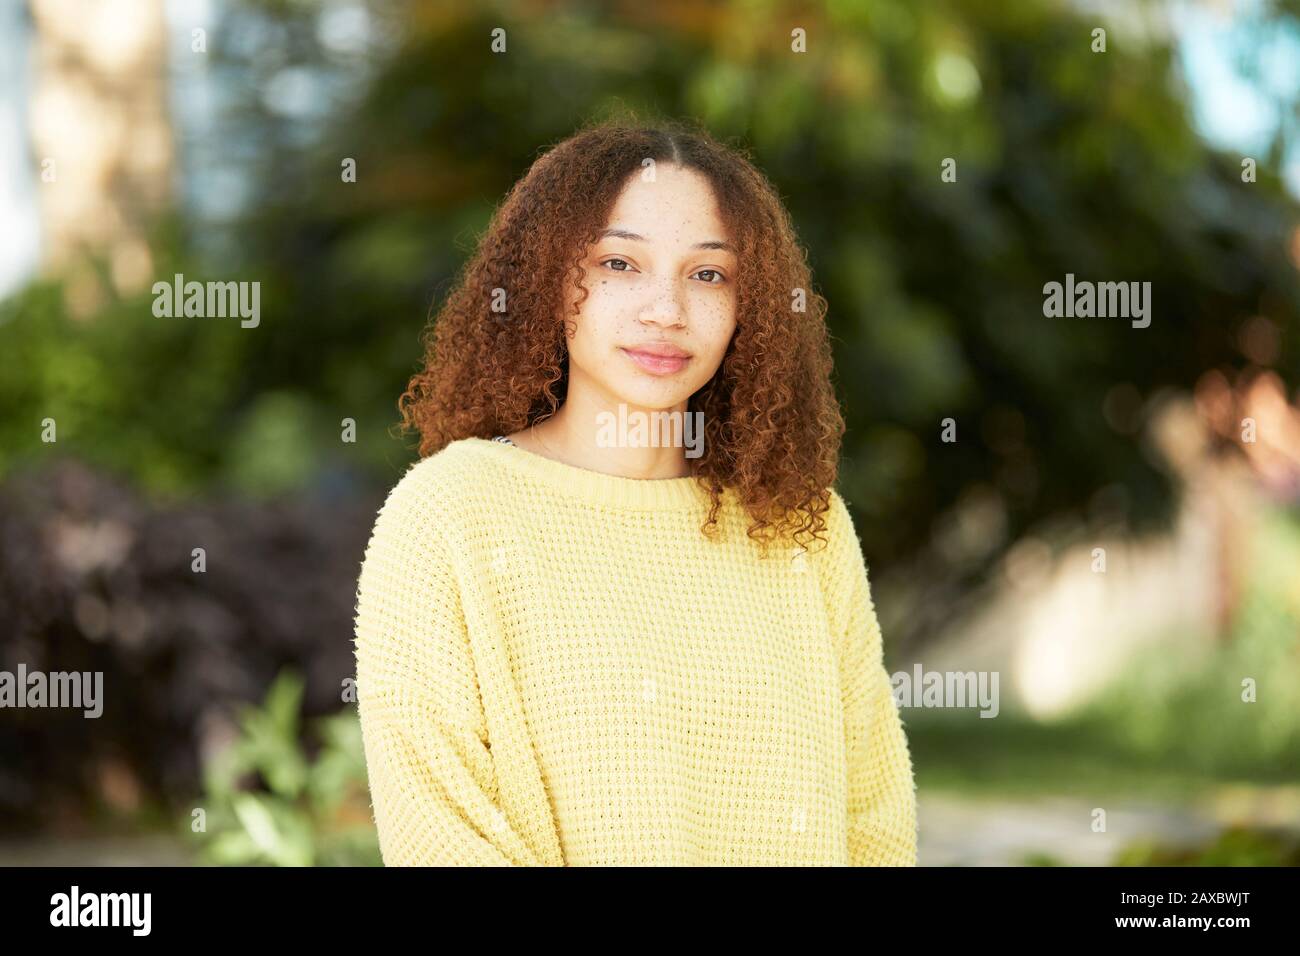 Retrato mujer joven confiada en el suéter amarillo Foto de stock